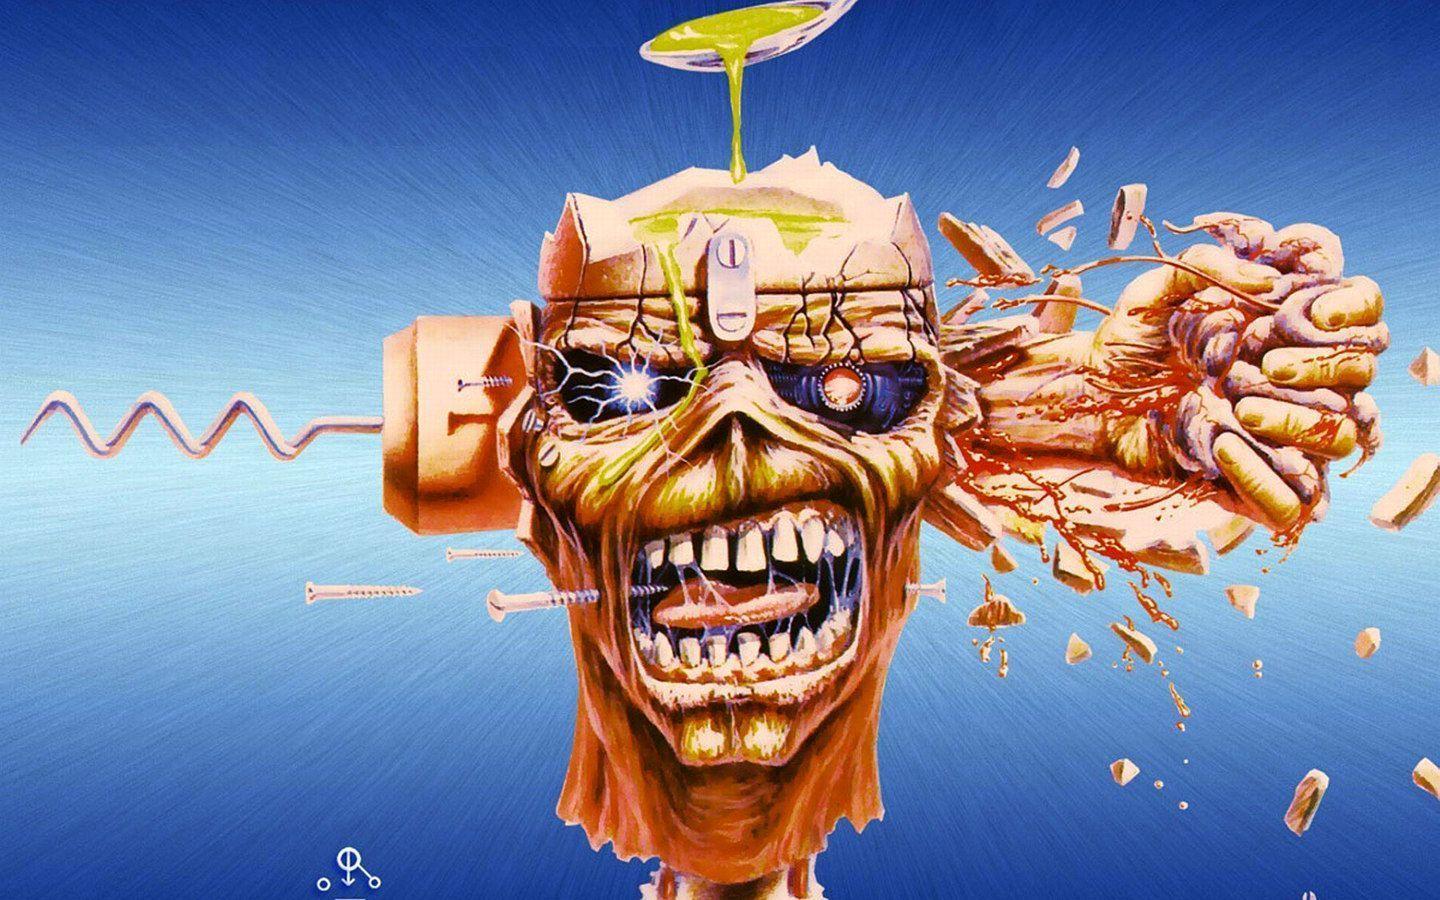 Iron Maiden Album Cover Art Riggs Artworks 1440x900